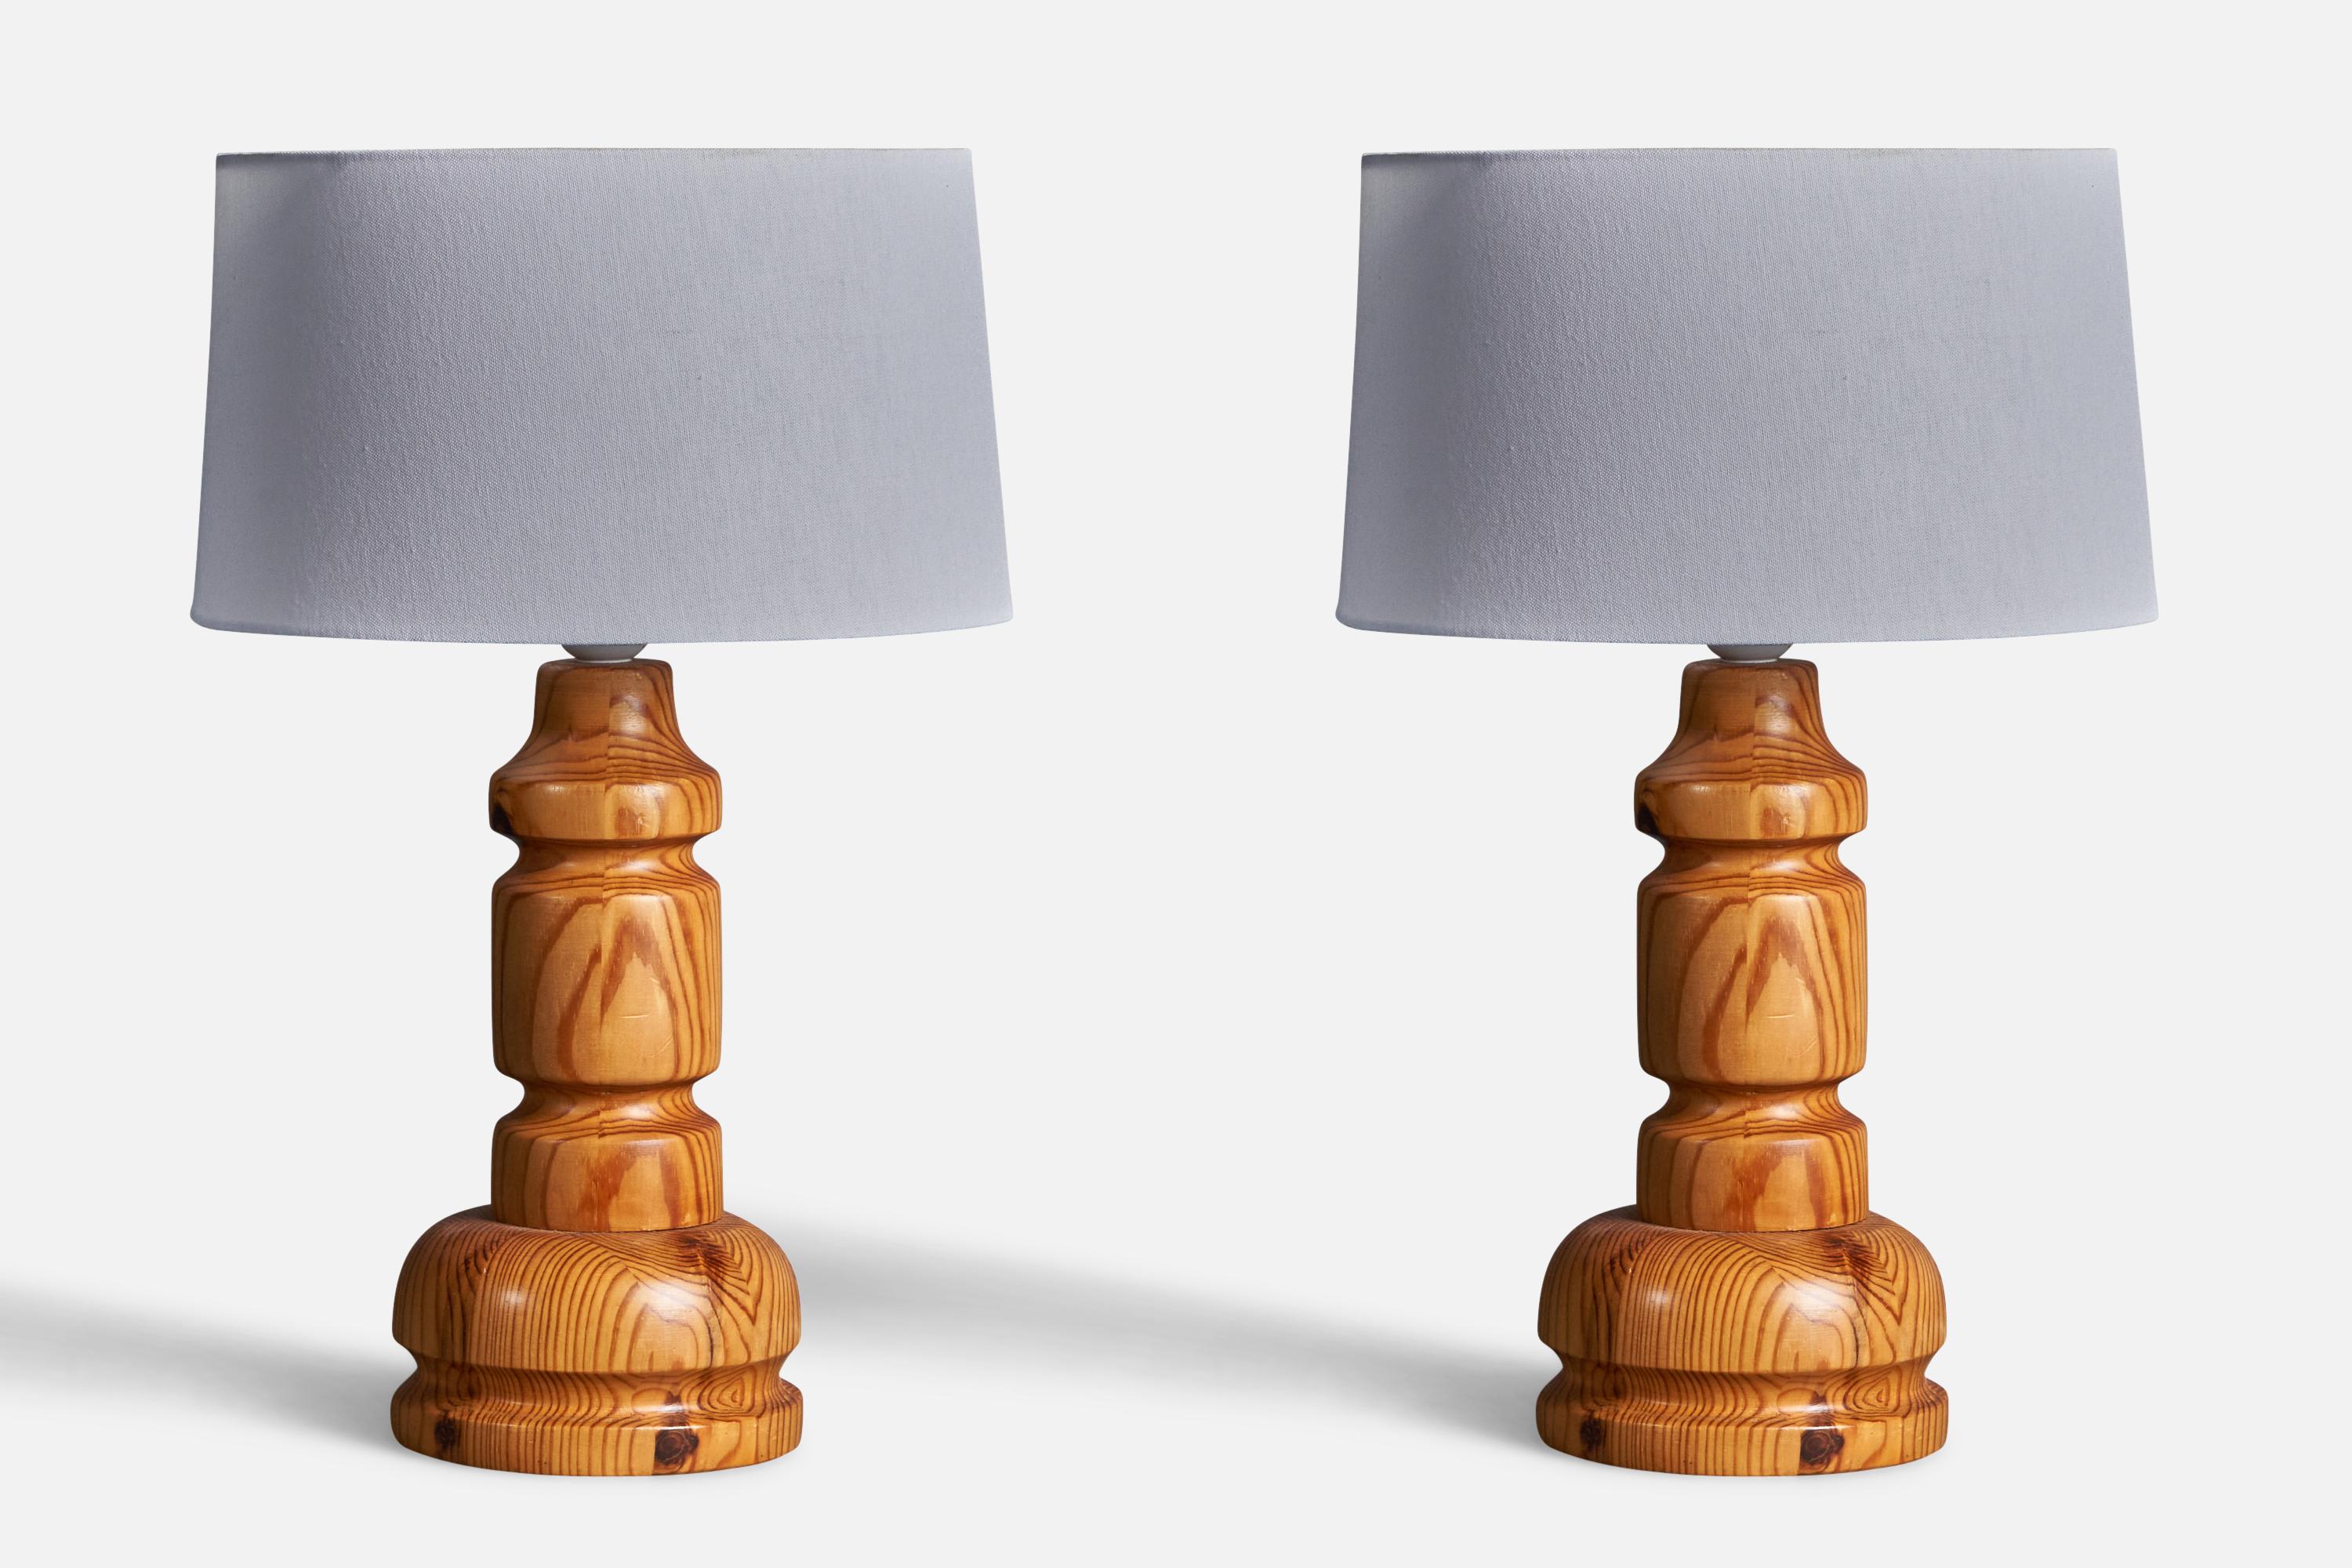 Lampe de table, conçue et produite par Stig Johnsson pour son entreprise Smålandsslöjd, Värnamo, Suède, années 1970. La marque est apposée sur la face inférieure.

Condit : Bon 
Usure conforme à l'âge et à l'utilisation.

Dimensions de la lampe